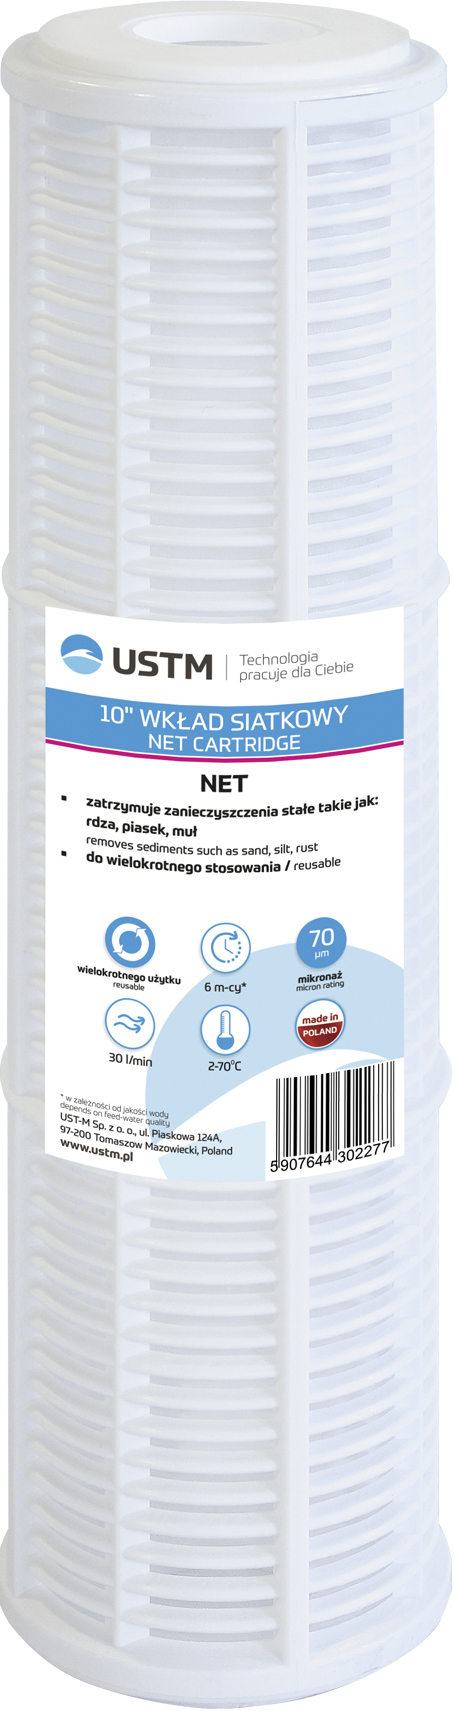 USTM NET